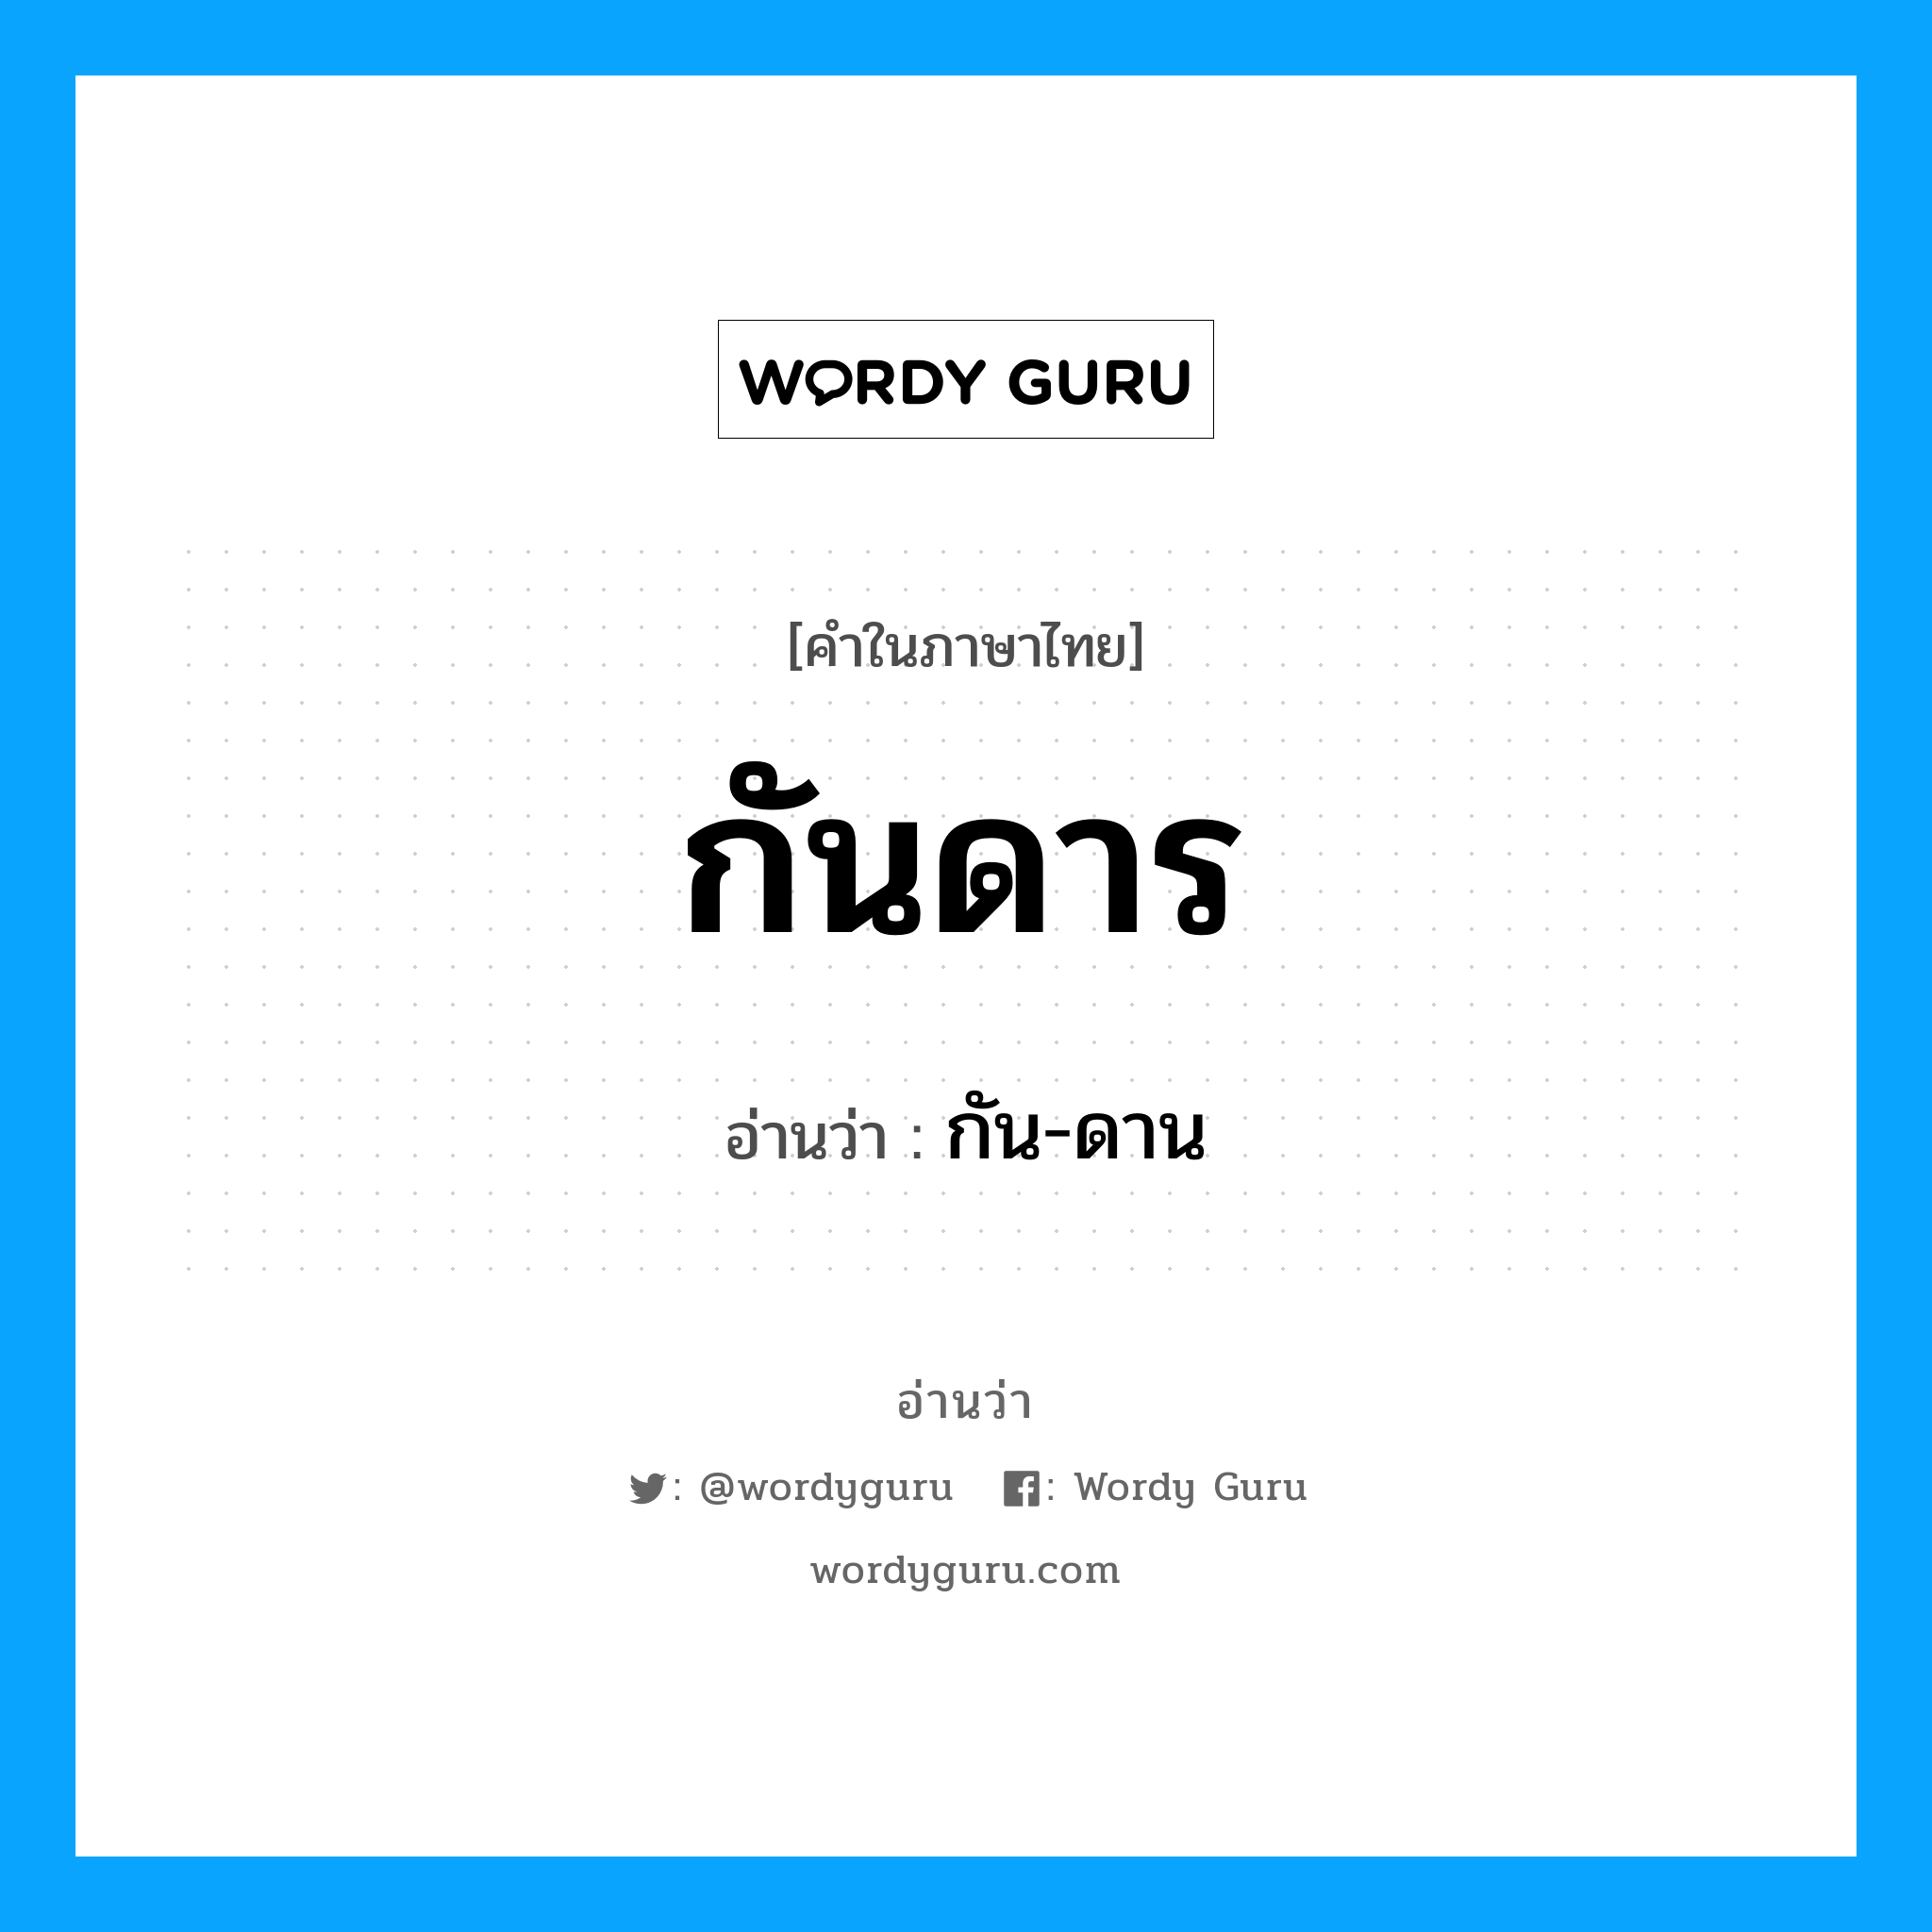 กัน-ดาน เป็นคำอ่านของคำไหน?, คำในภาษาไทย กัน-ดาน อ่านว่า กันดาร